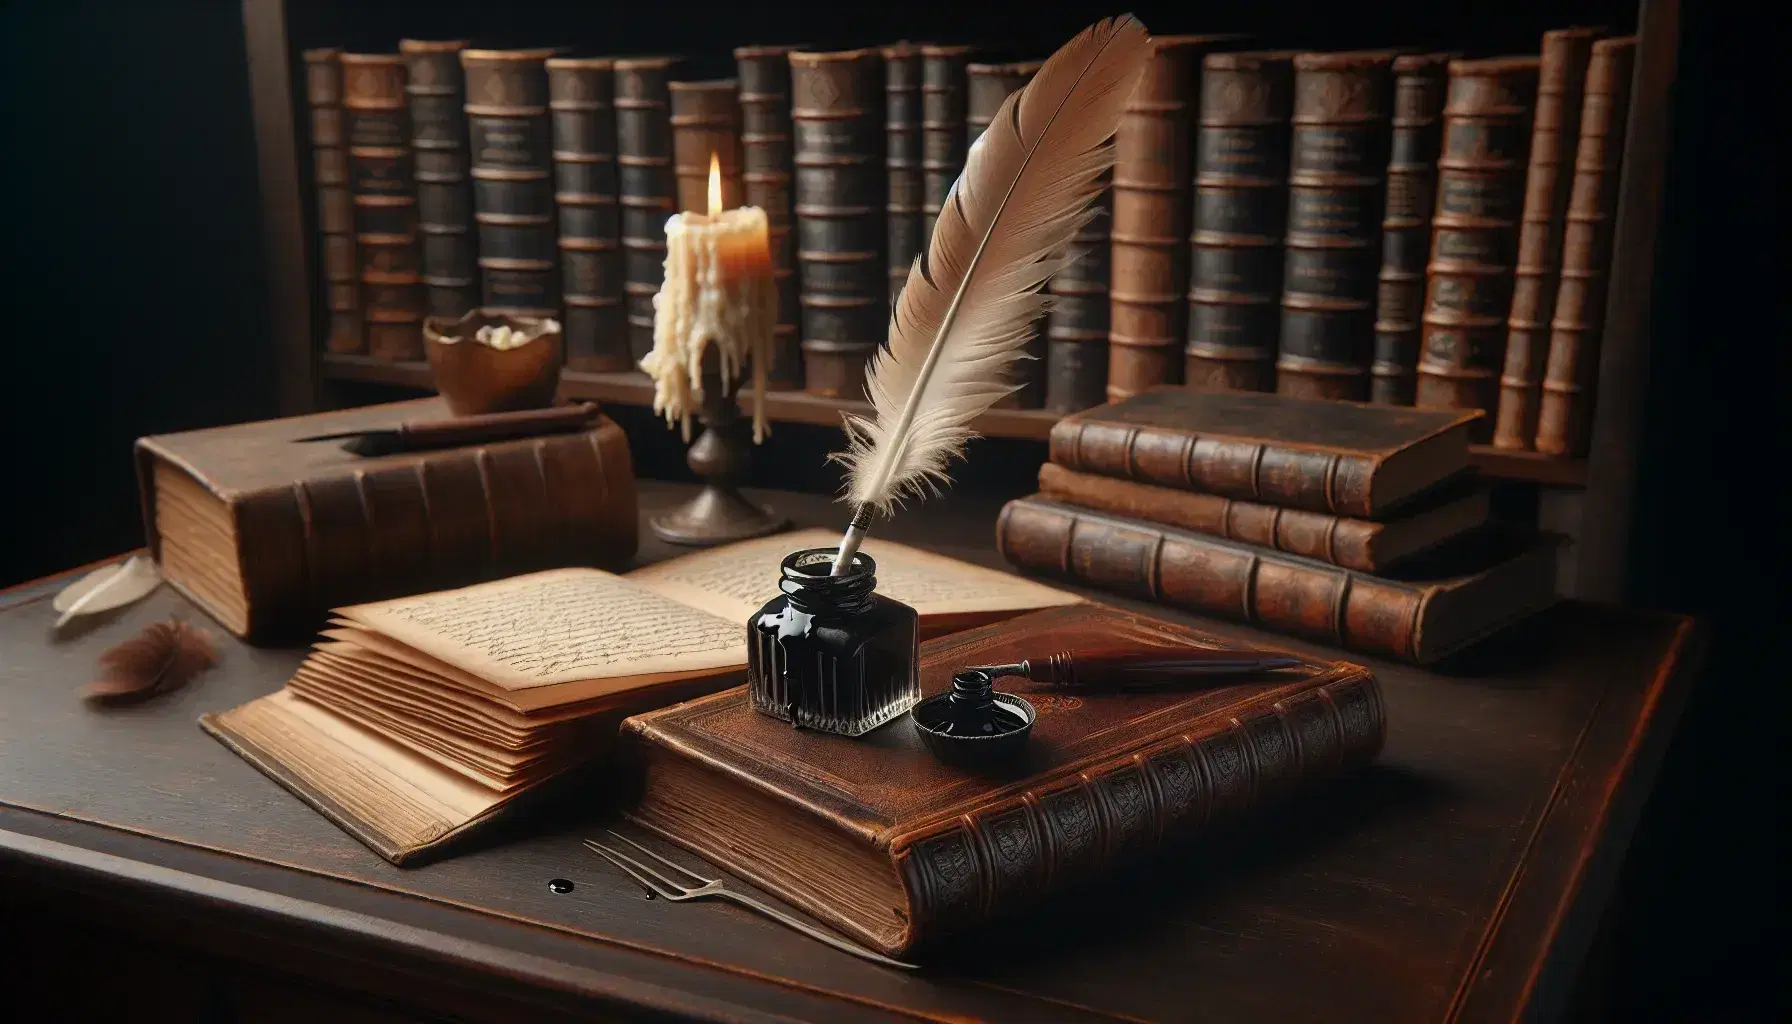 Scrivania antica in legno scuro con calamaio, penna d'oca, libro in pelle marrone aperto e candela consumata, su sfondo di libreria con volumi antichi.